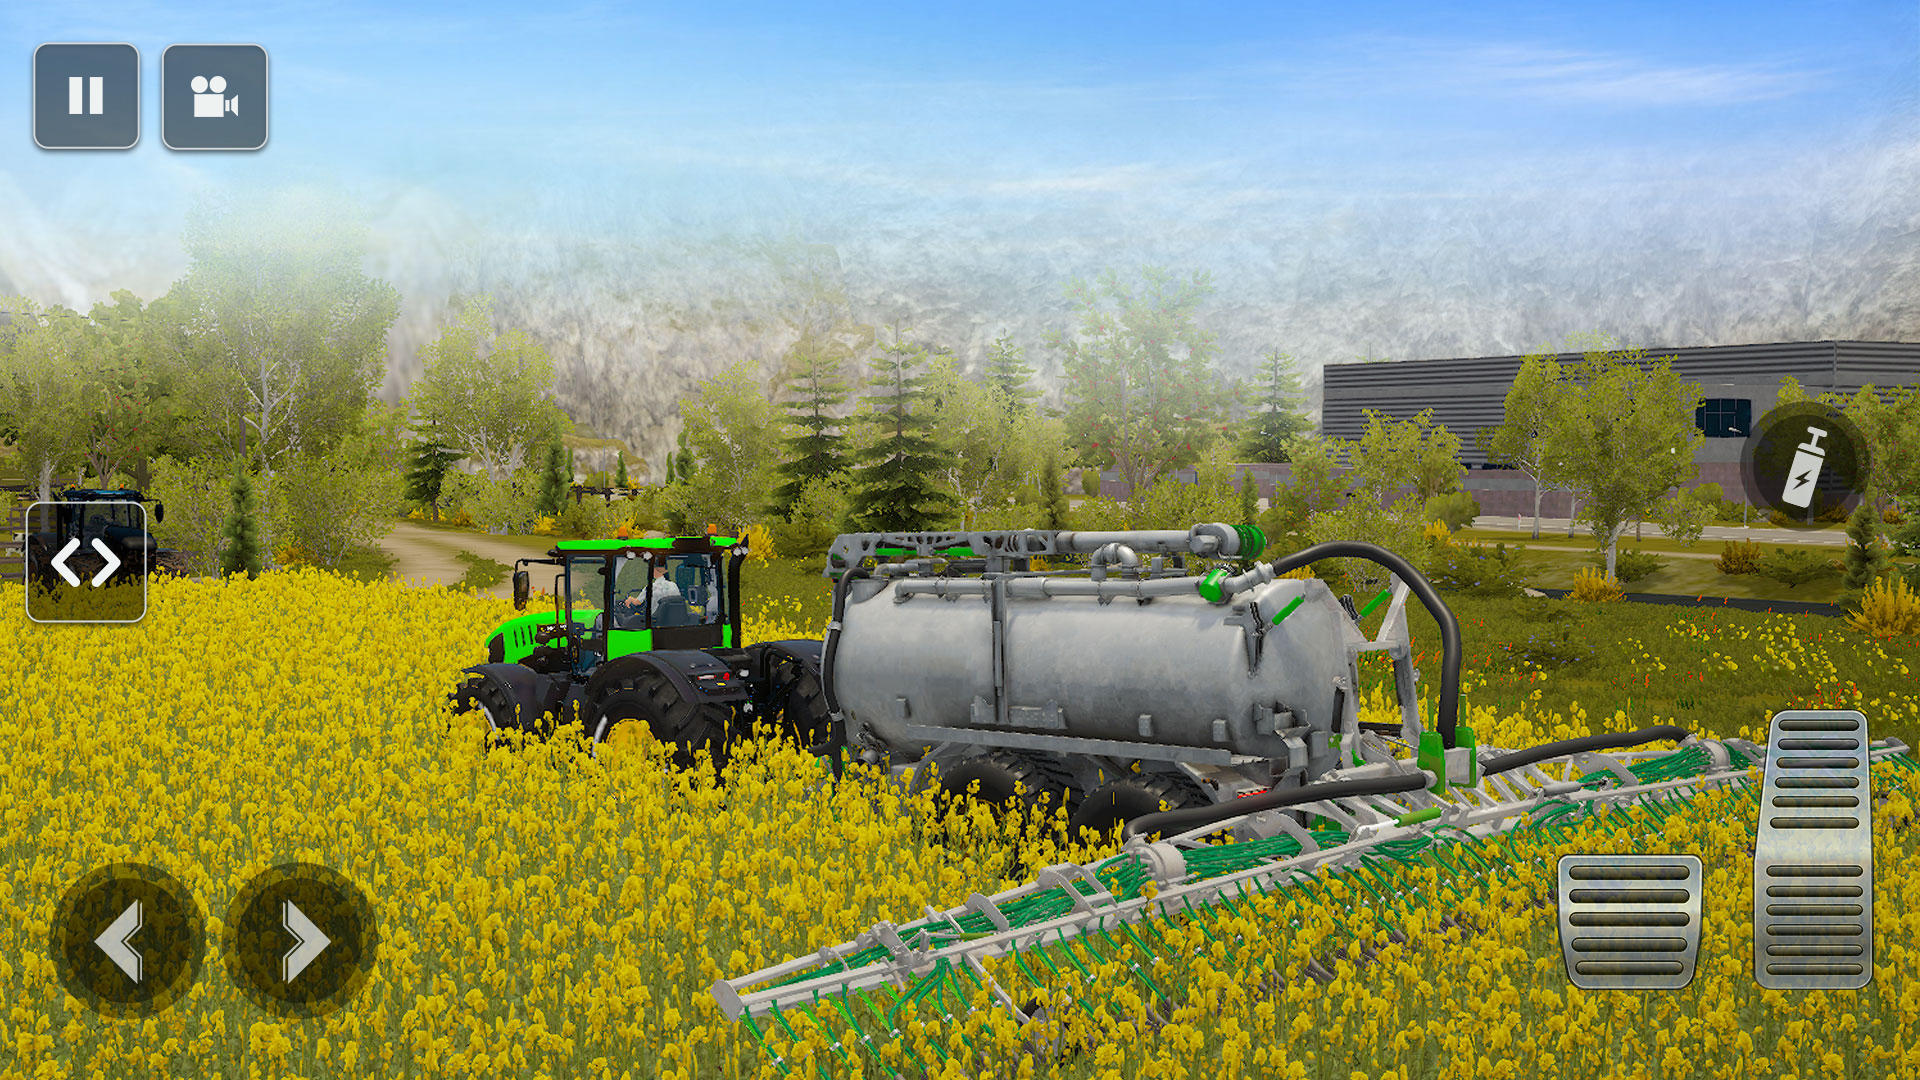 Screenshot of Tractor Farm Simulator Game